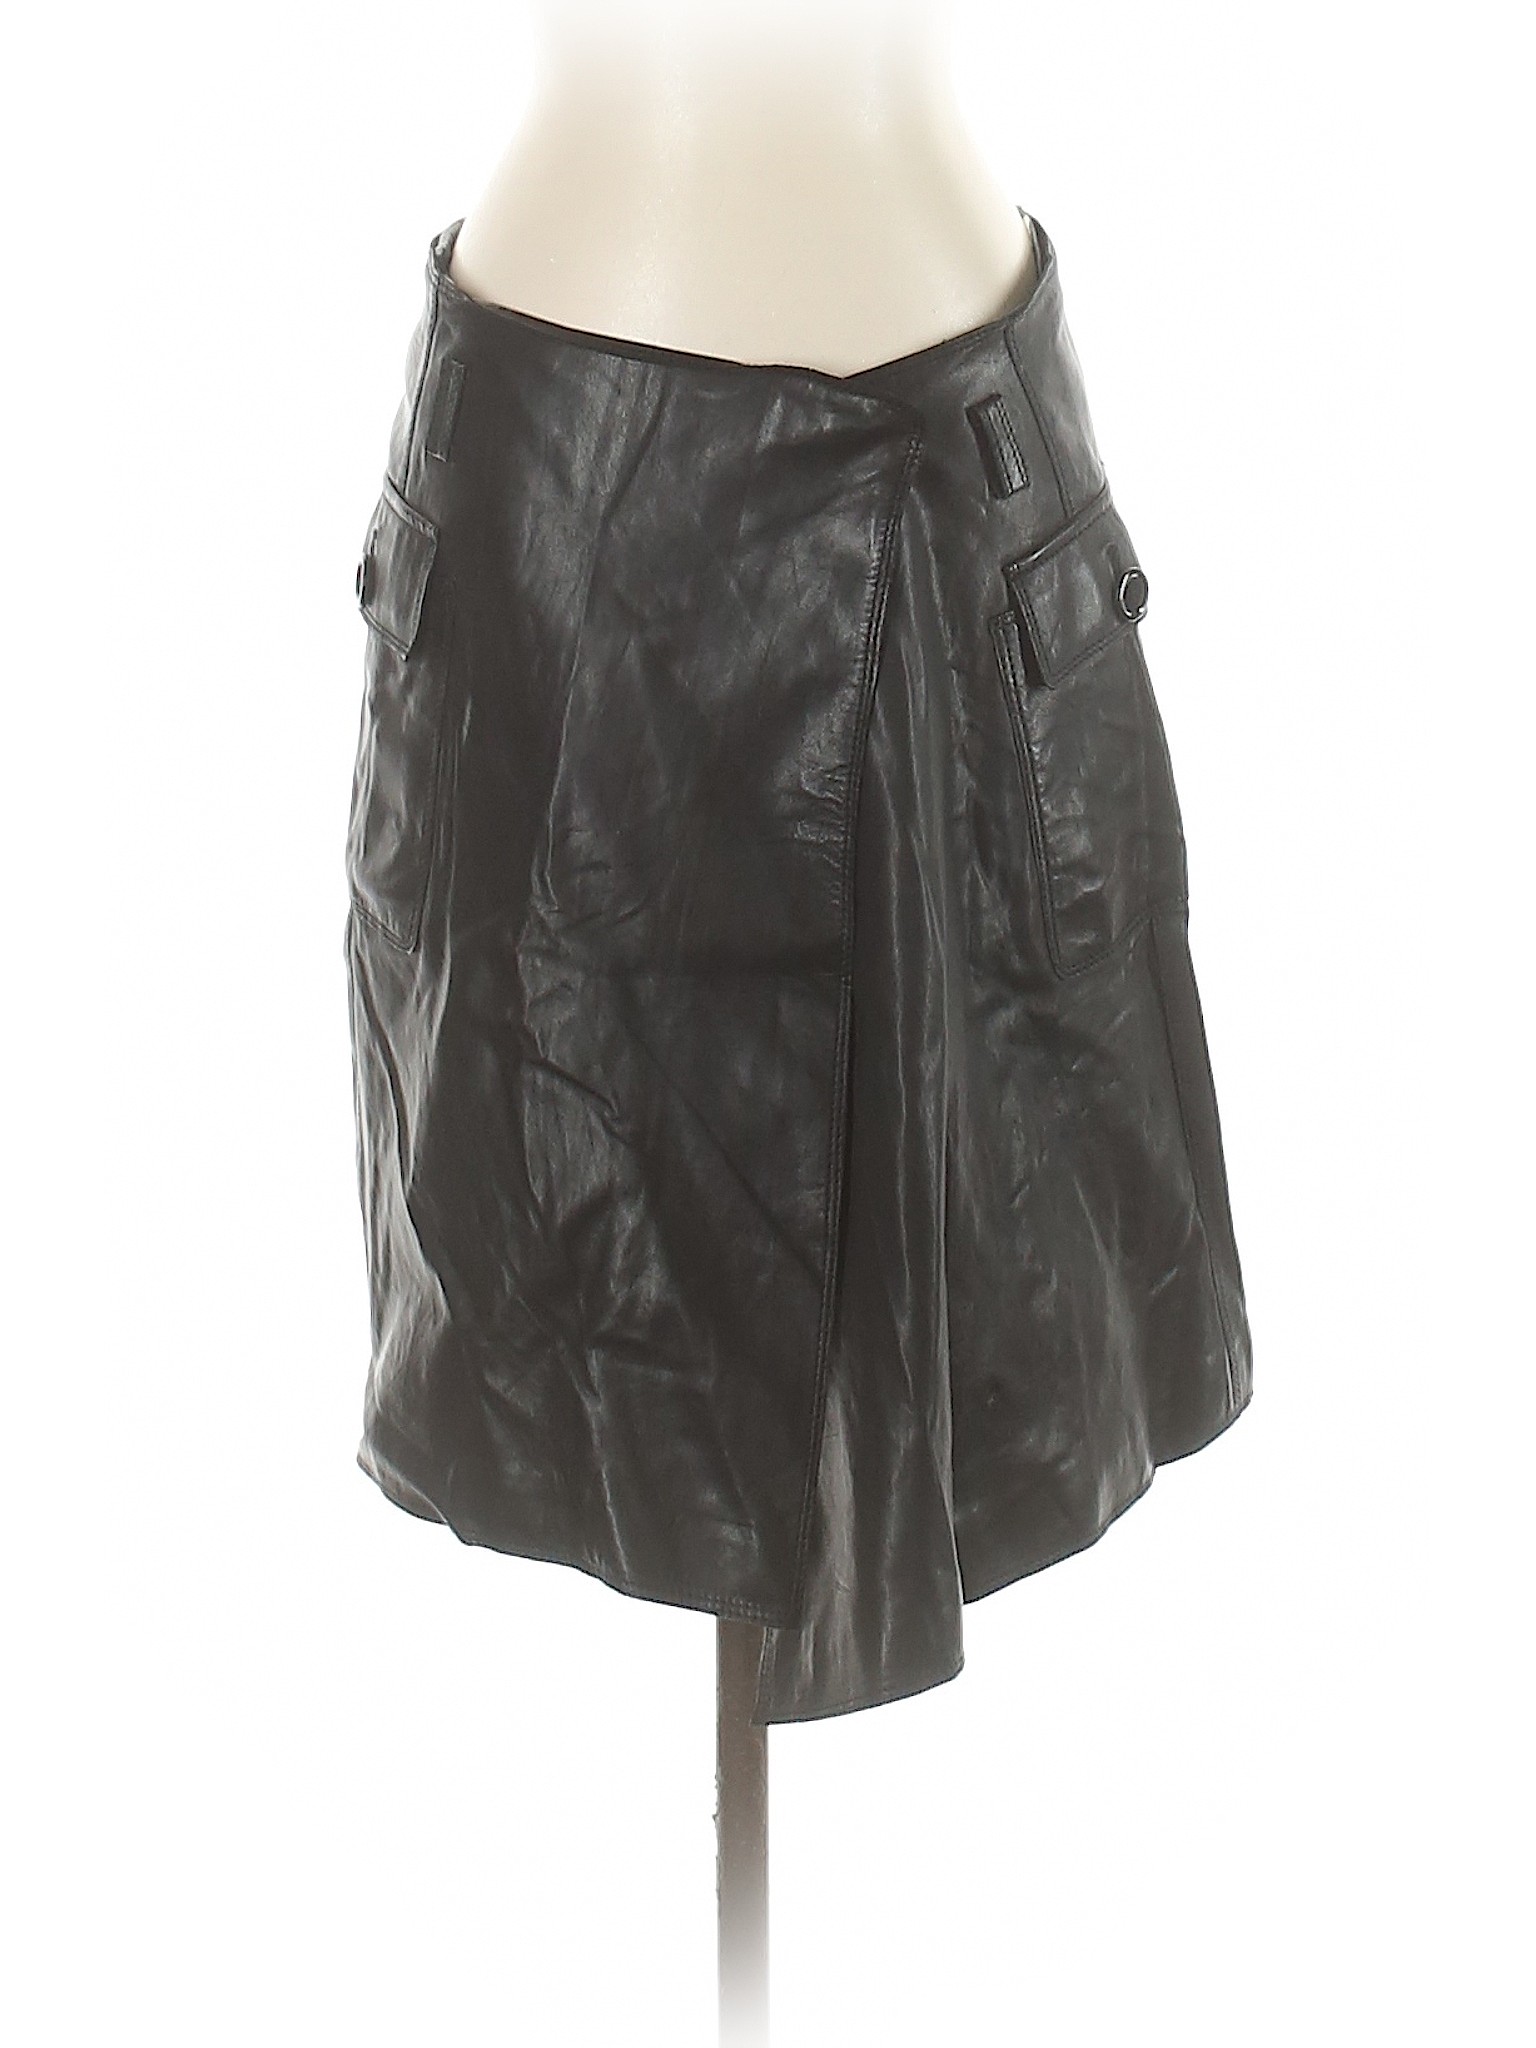 BOSS by HUGO BOSS Women Black Leather Skirt 4 | eBay